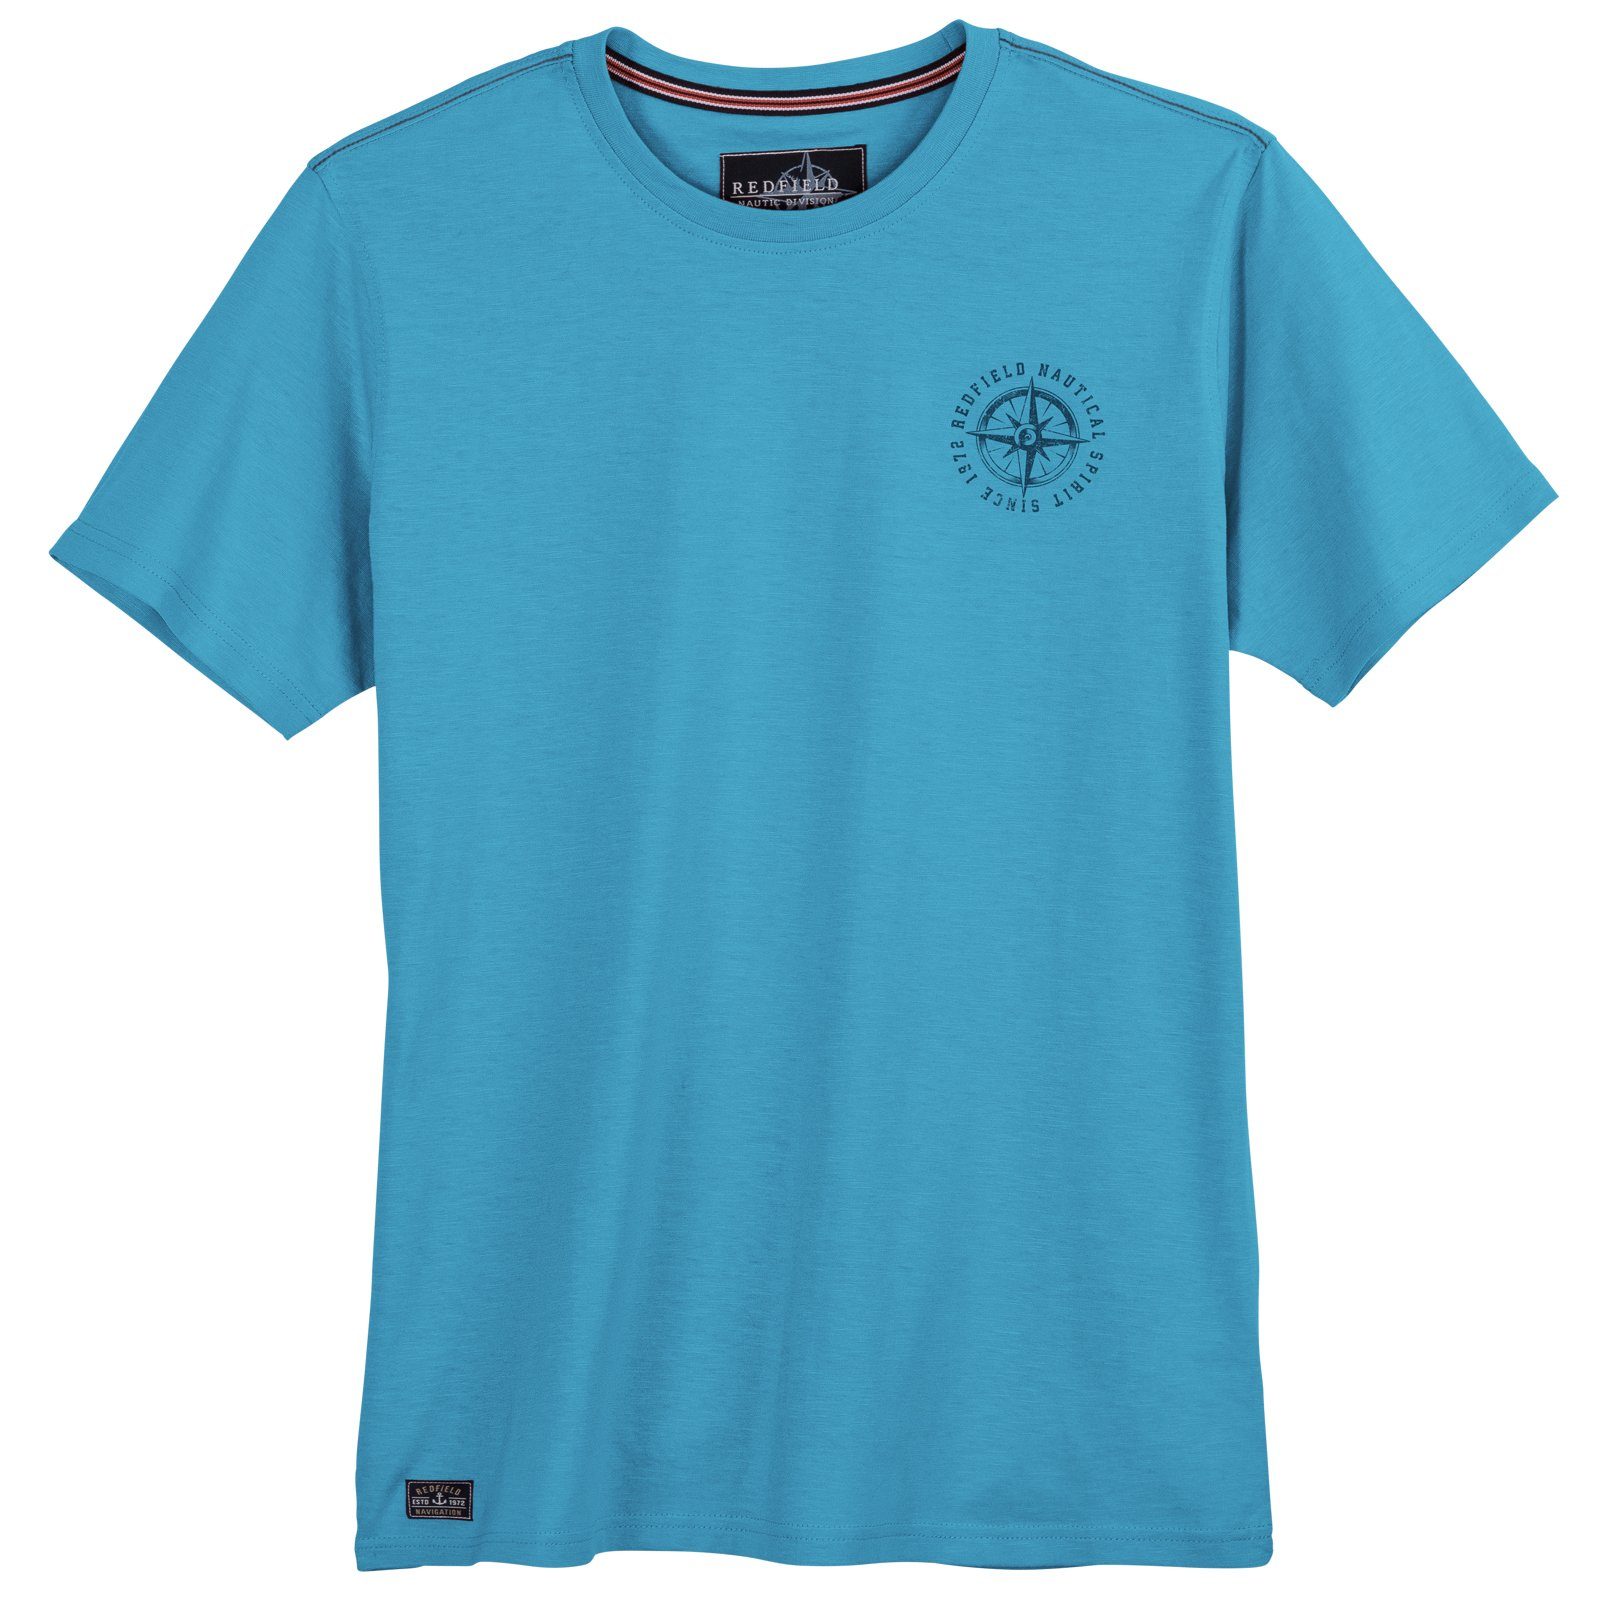 redfield Rundhalsshirt Große Größen Herren T-Shirt azurblau kleiner Brustprint Redfield